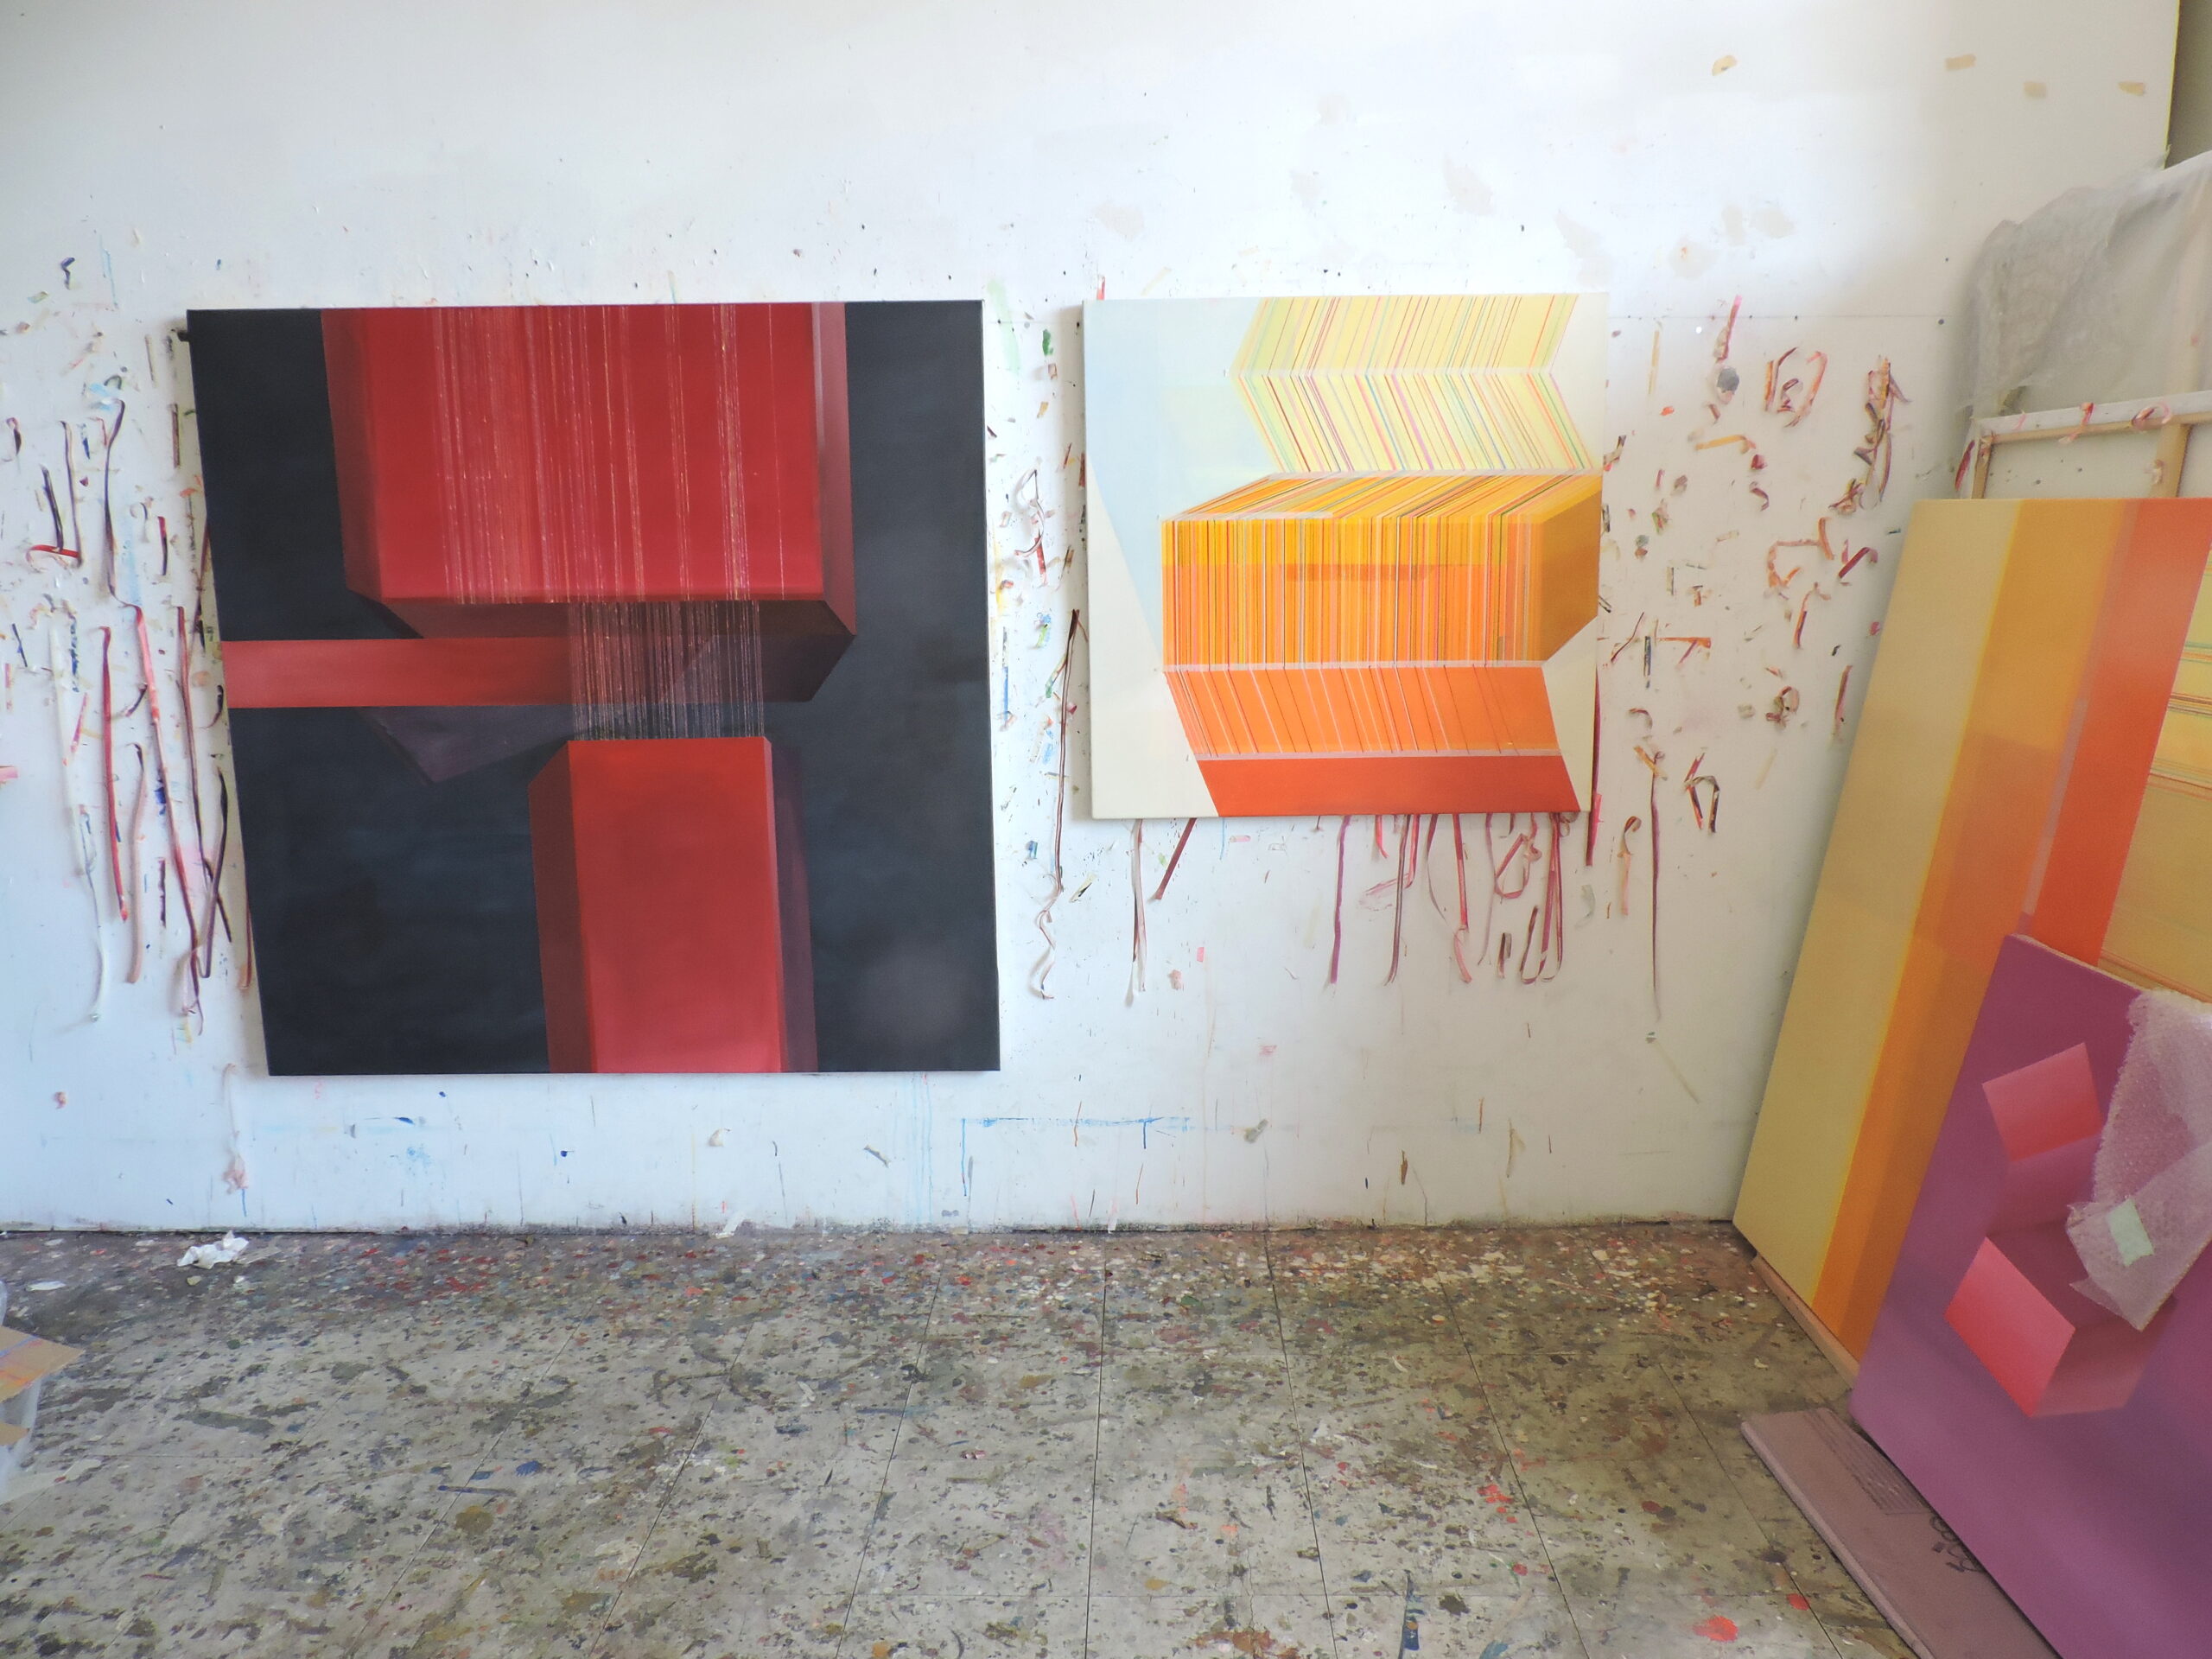 work in progress, studio by Antonietta Grassi.